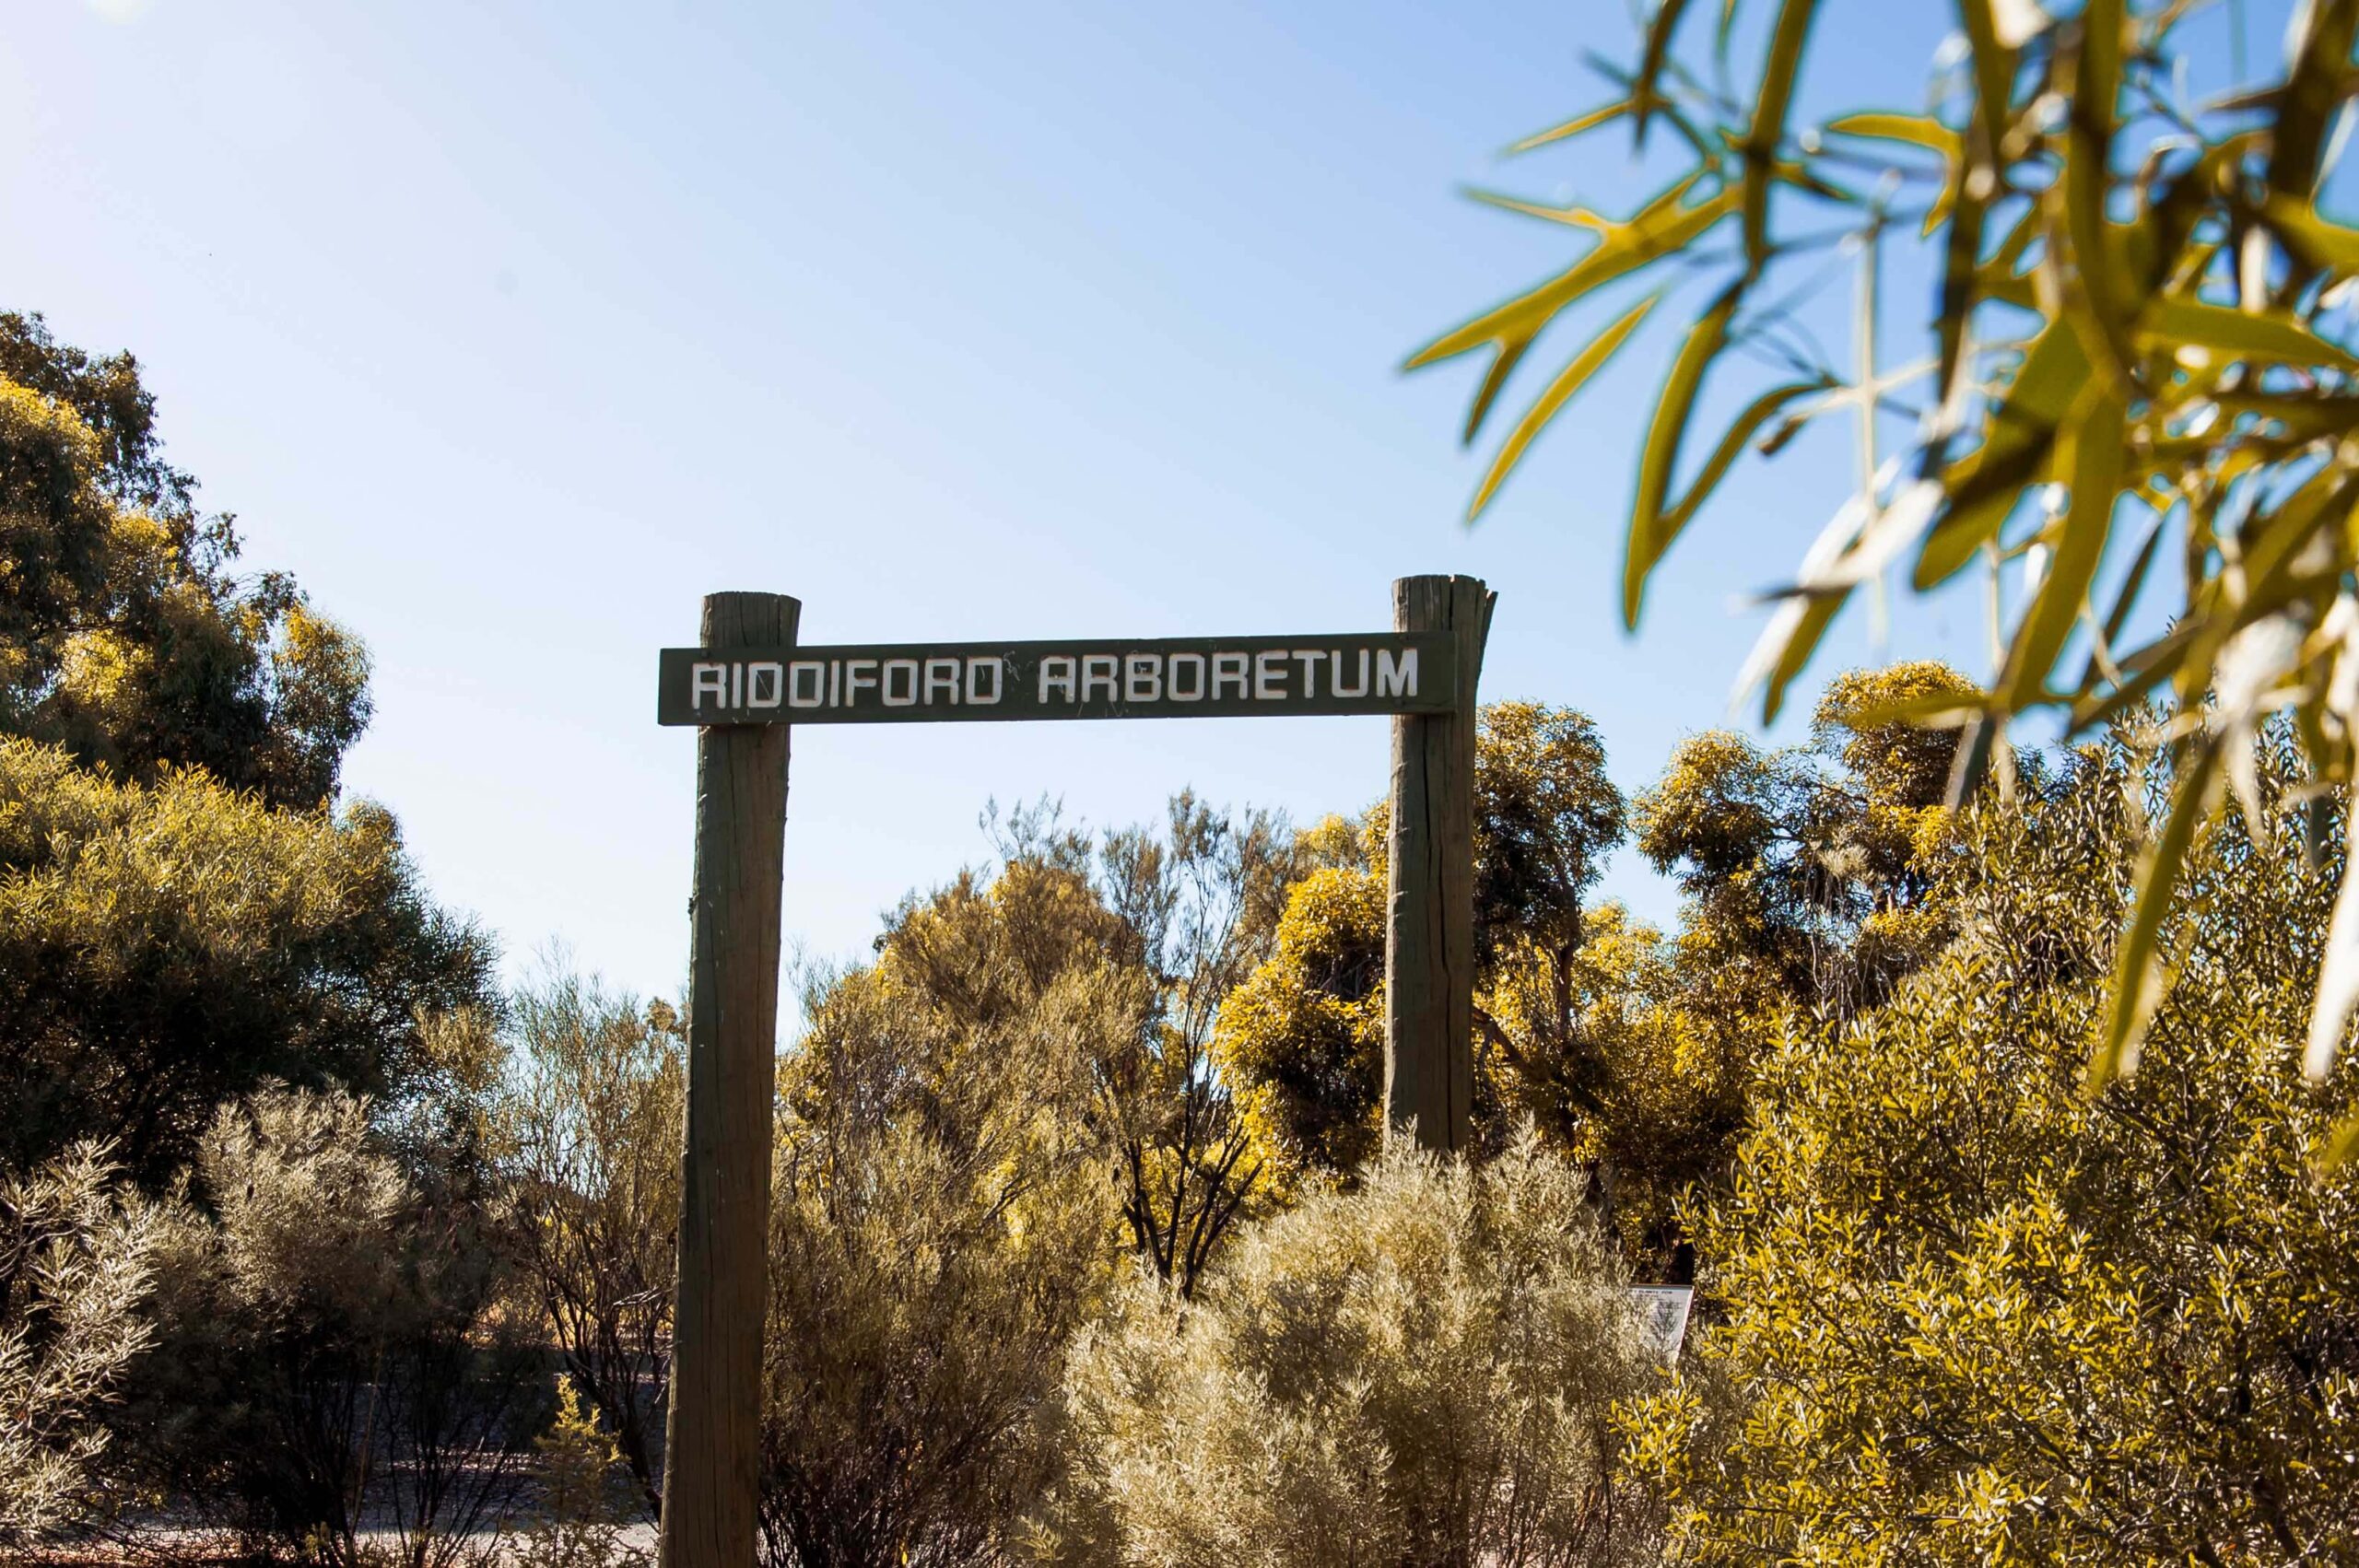 Riddiford Arboretum